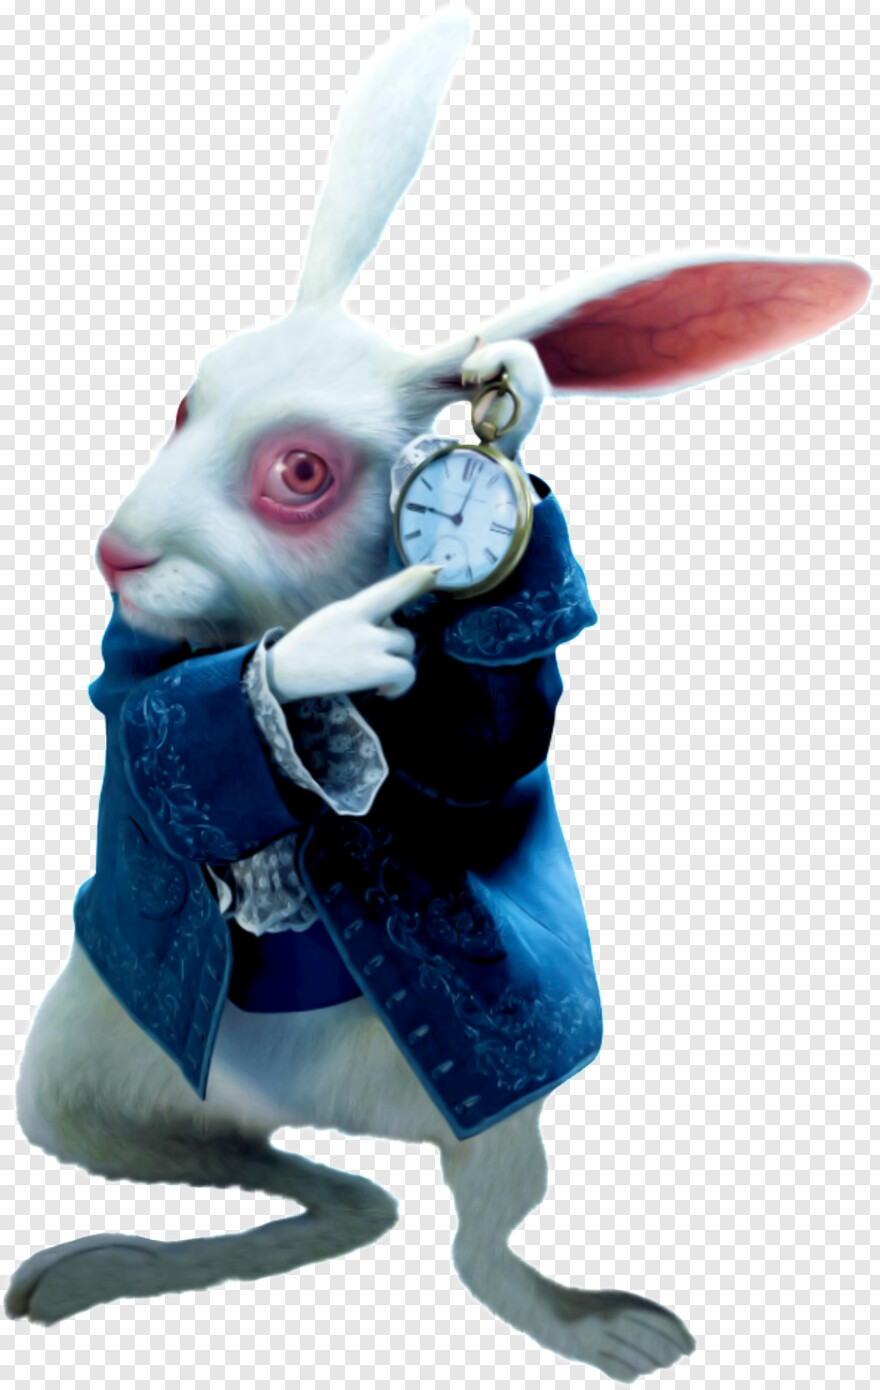 rabbit # 542910